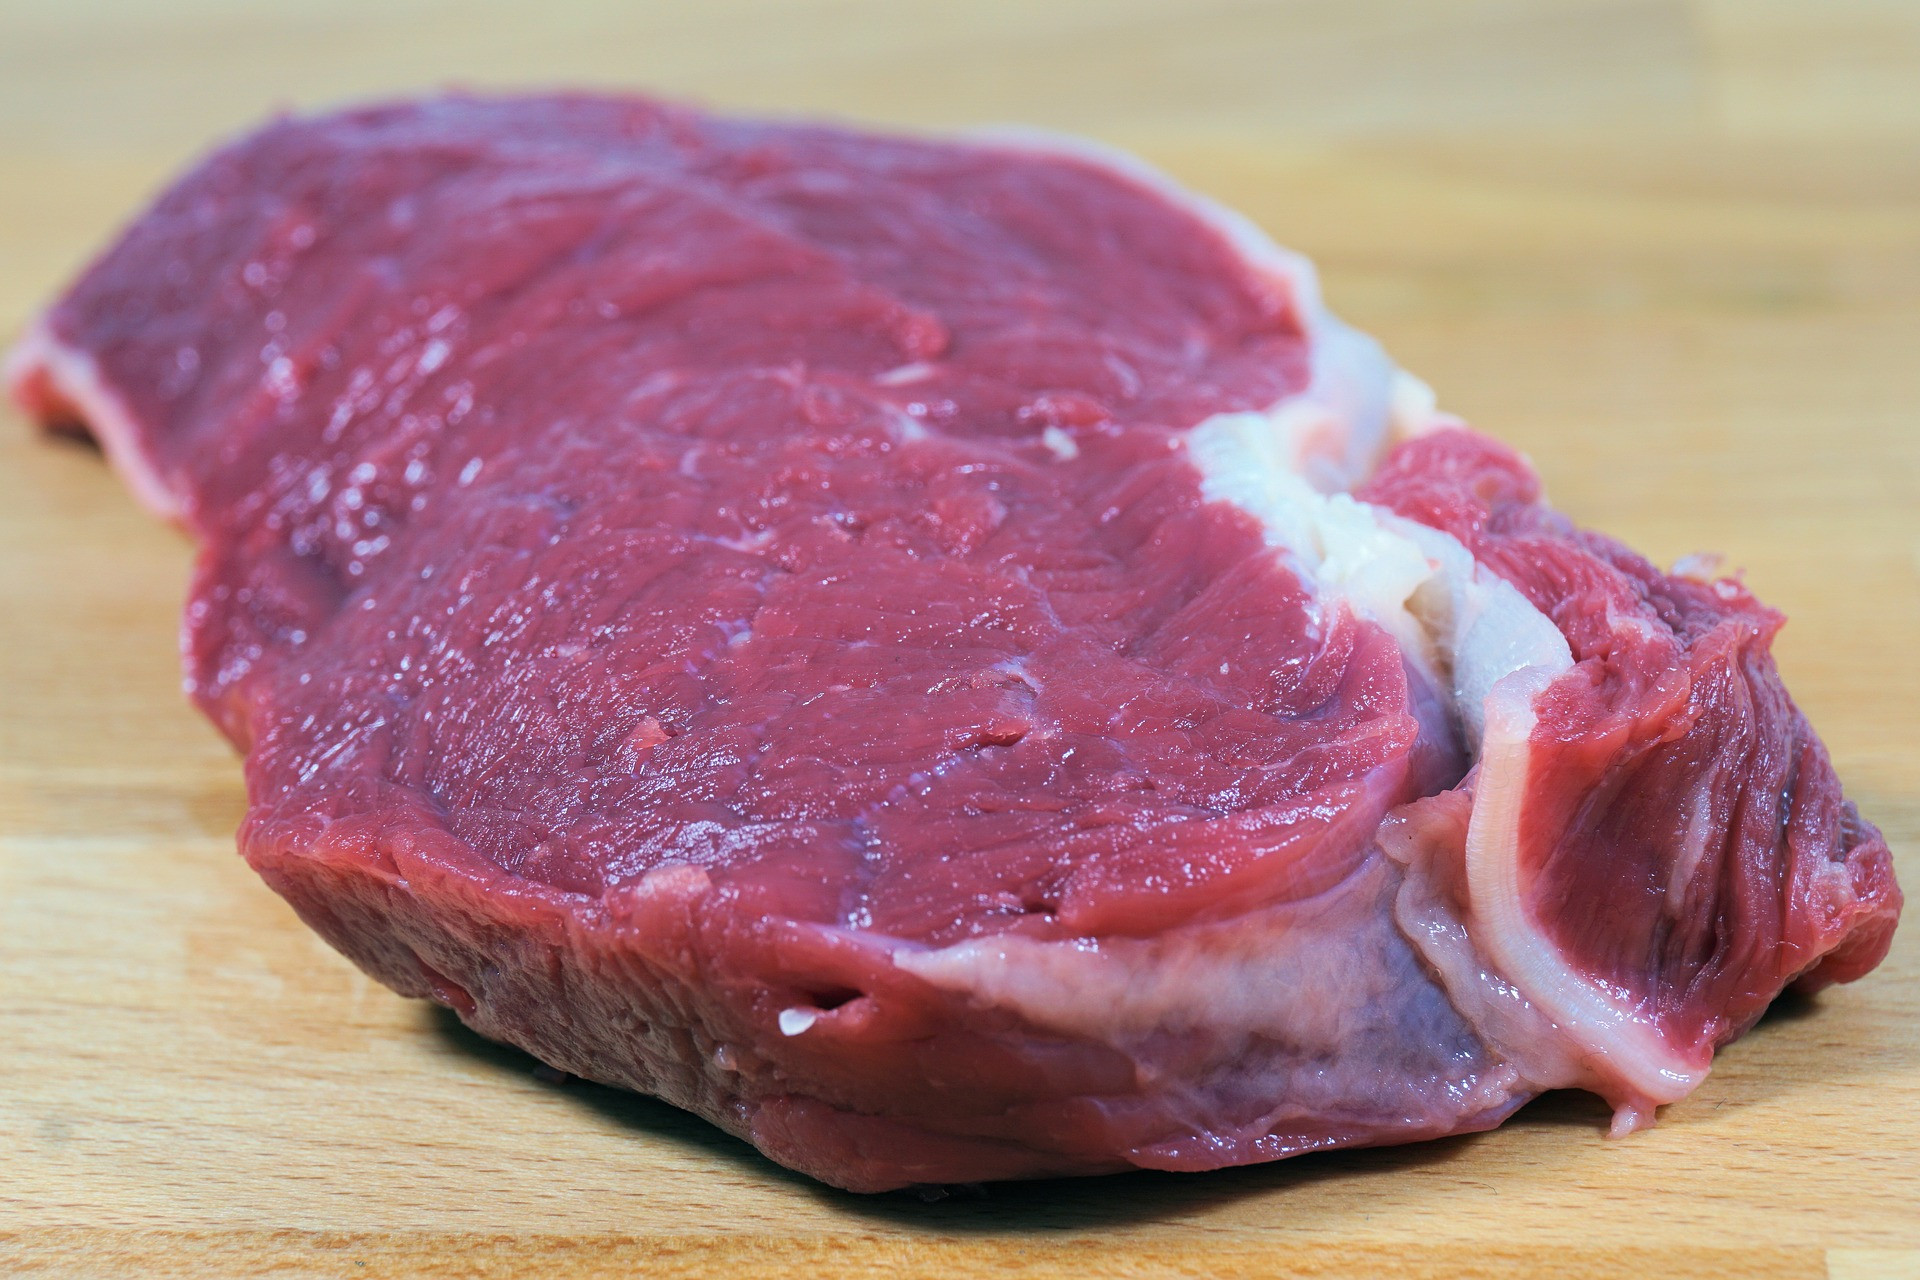 Mnoho čerstvého surového mäsa v obchodoch je kontaminovaného salmonelou, E. coli a inými baktériami, ktoré môžu spôsobiť ochorenia. Malo by sa teda skonzumovať alebo zmraziť do dátumu spotreby. Musíte tiež dávať pozor na to, aby ste mäso pripravovali na vhodnej teplote. Najväčšie riziko totiž predstavuje mleté hovädzie mäso.